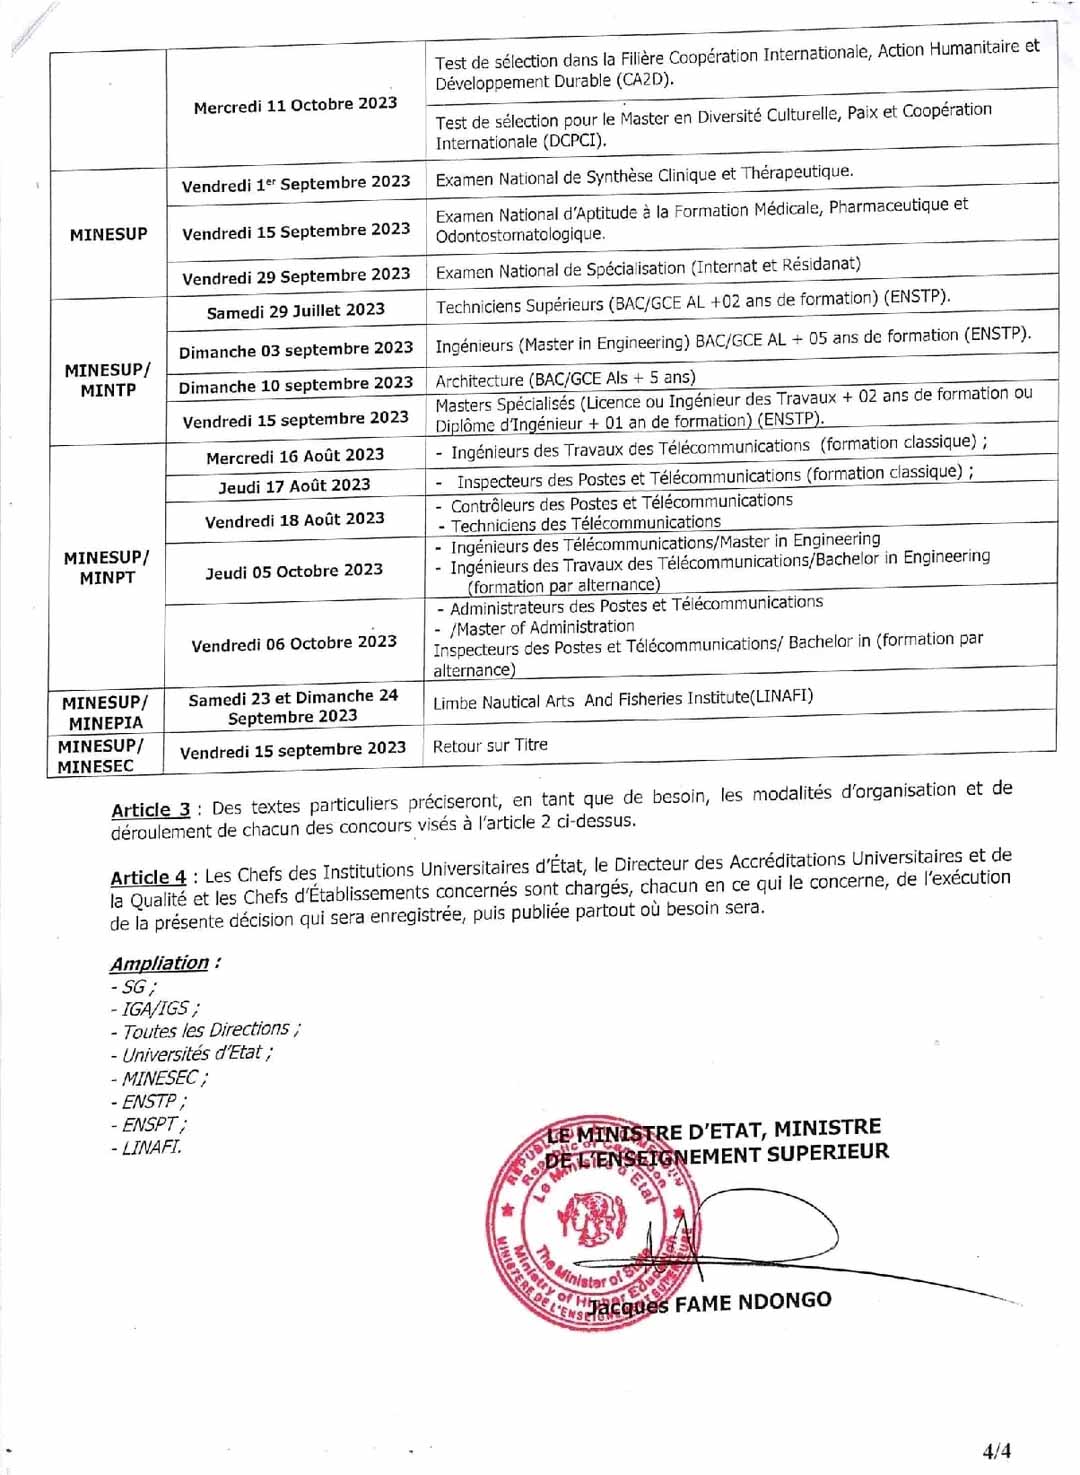 Calendrier des concours d'entrée dans les Établissements des Universités d'État du Cameroun 2023-2024.